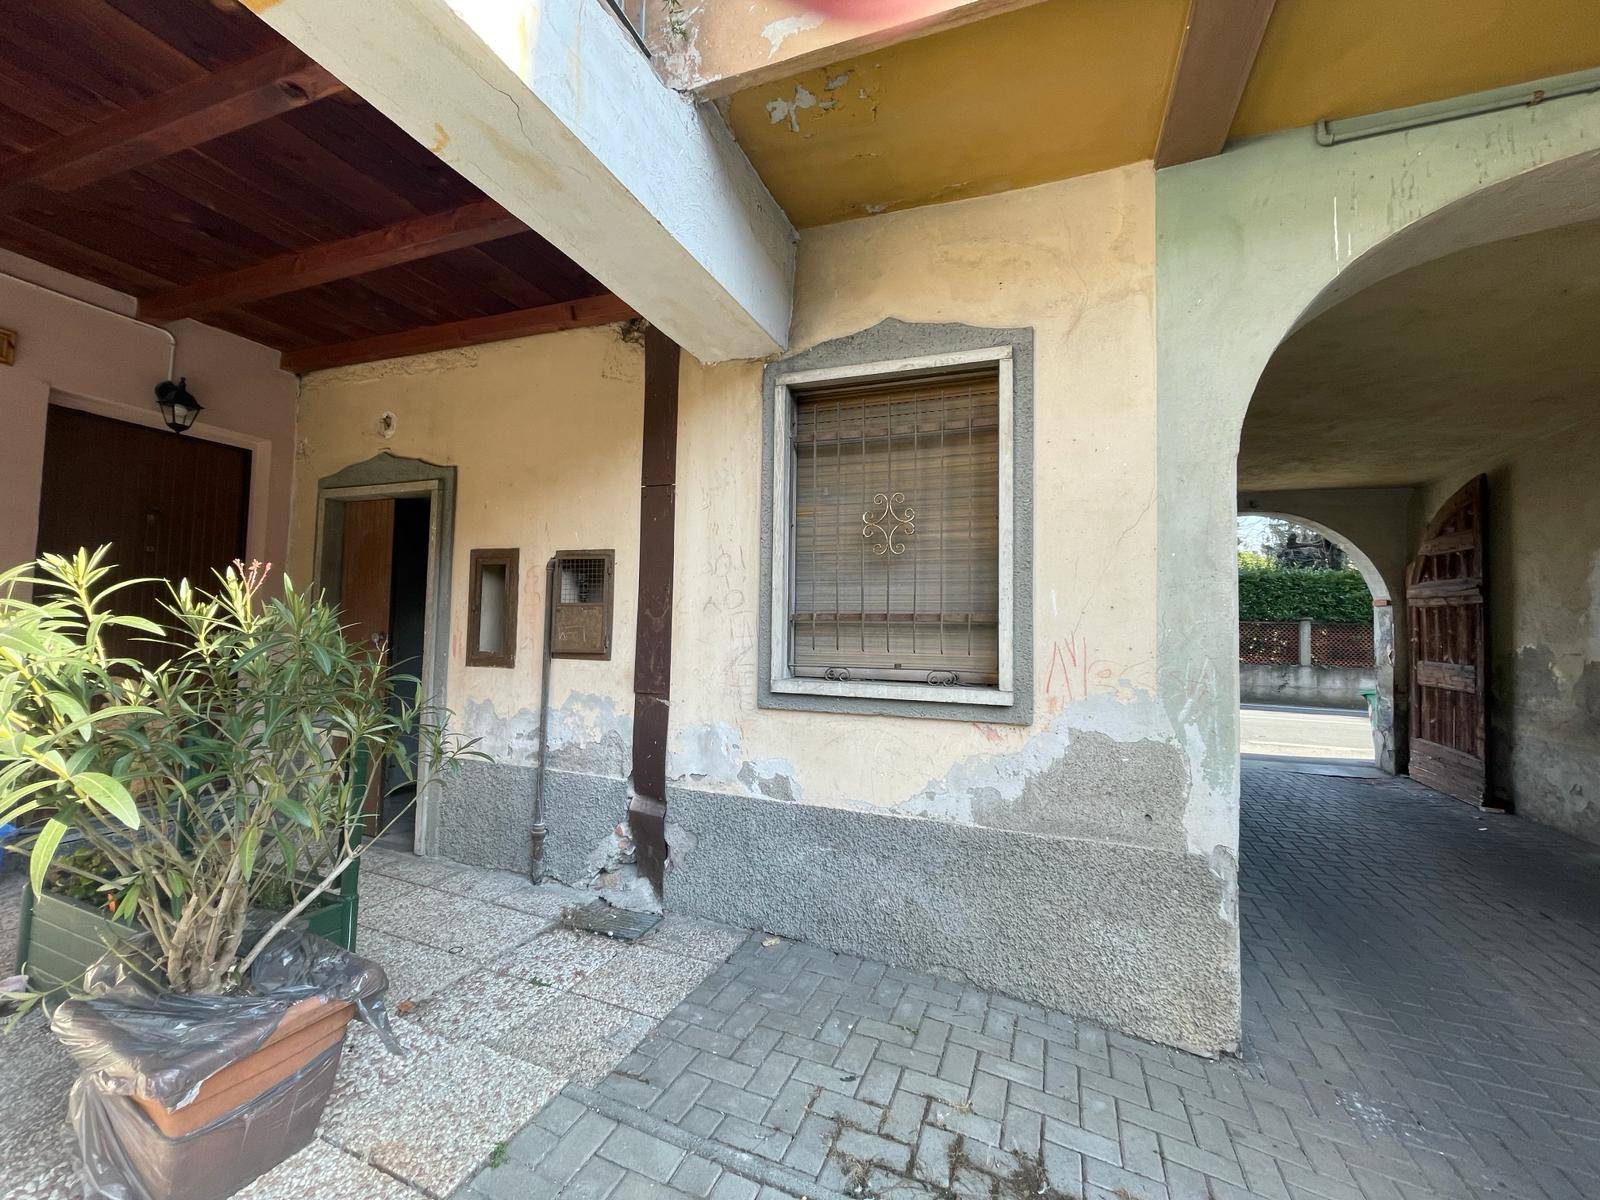 Rustico / Casale in vendita a Malnate, 3 locali, zona ne, prezzo € 35.000 | PortaleAgenzieImmobiliari.it